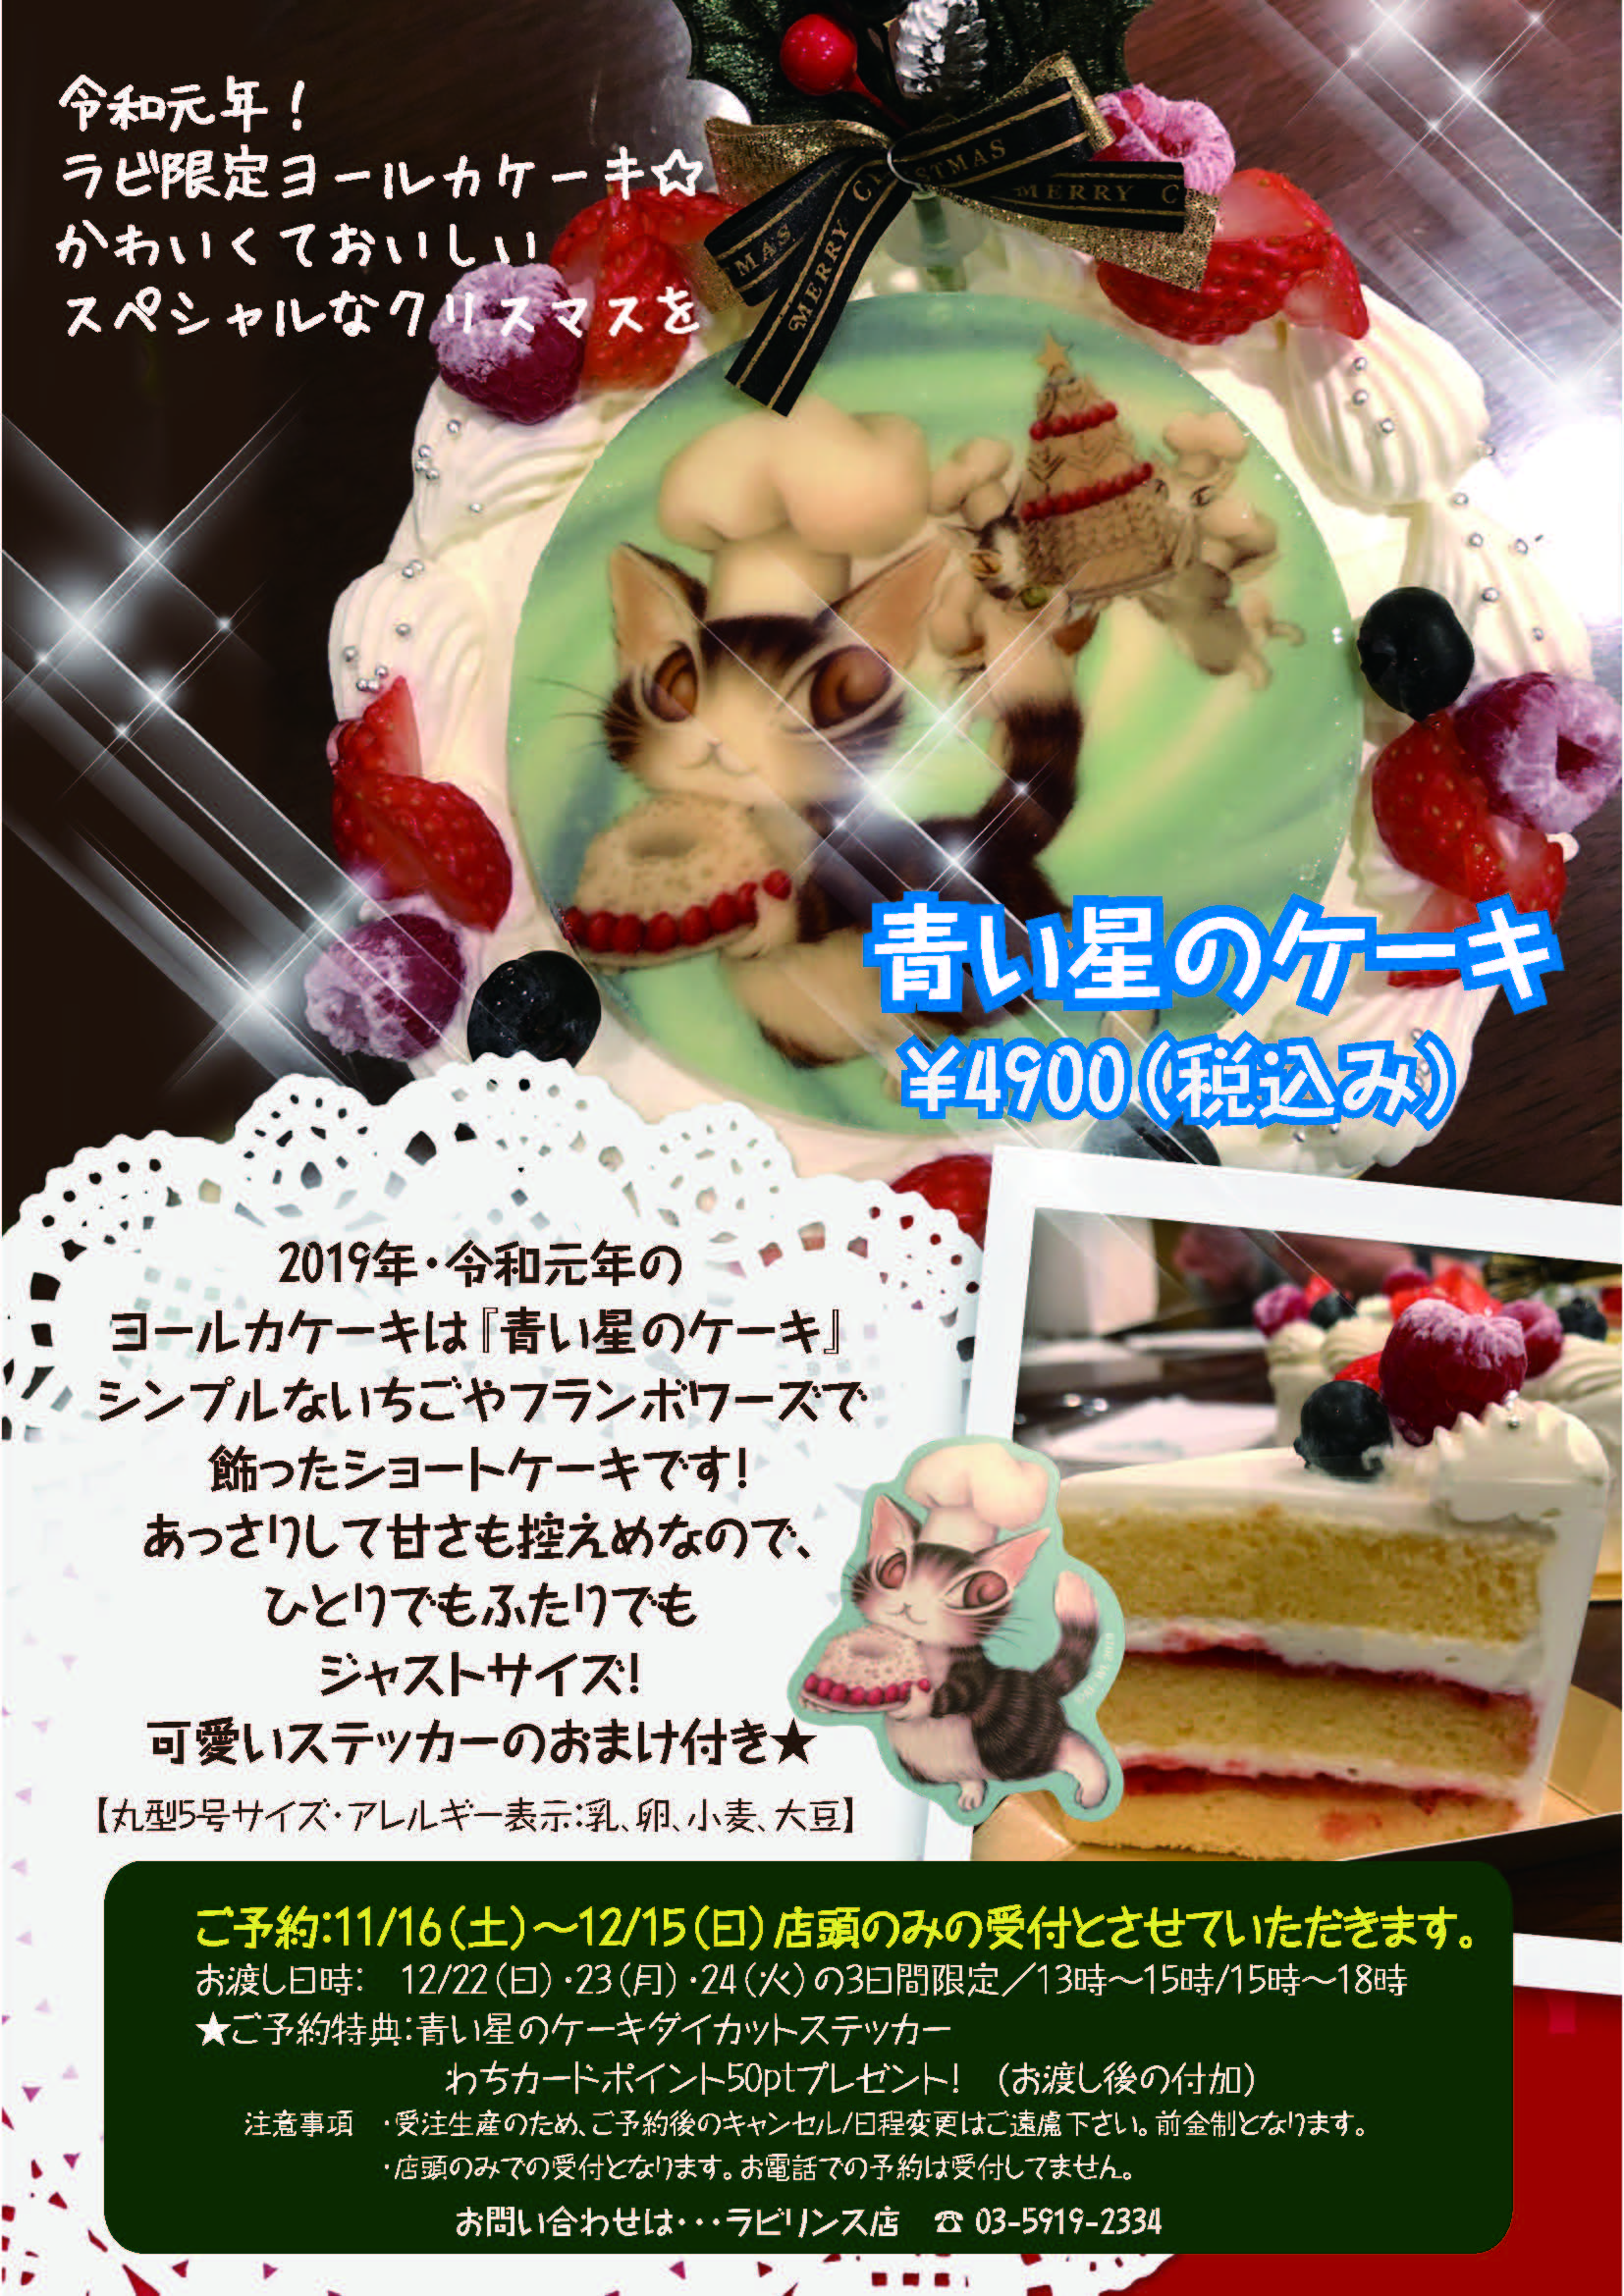 直営店からのお知らせ 新宿ラビリンス店 ヨールカケーキ予約受付開始 のお知らせ